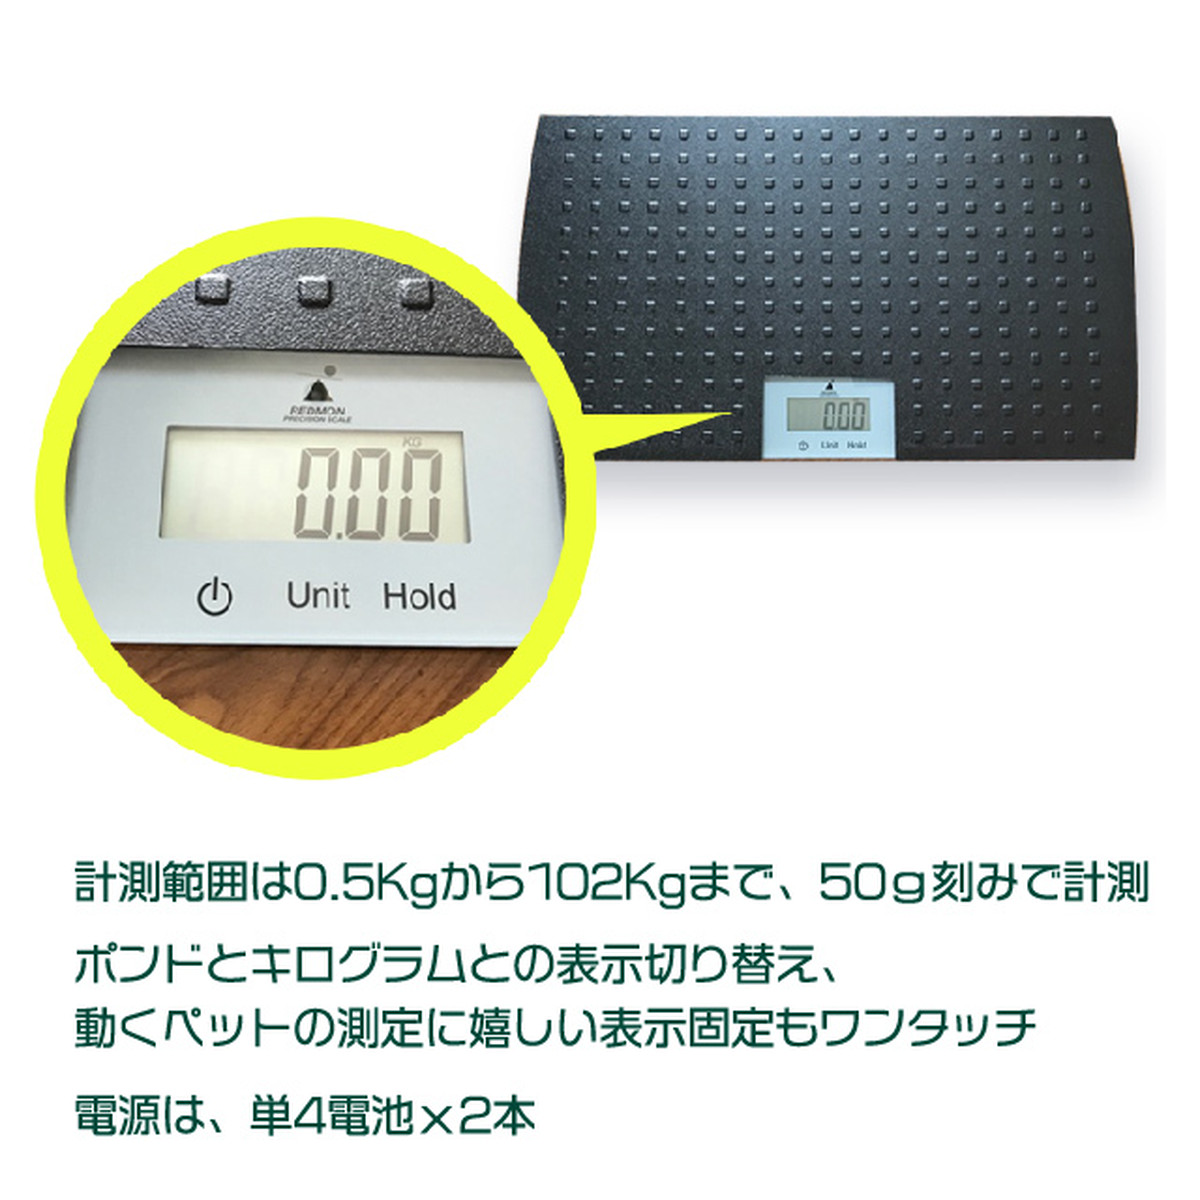 大型ペットデジタル体重計 Atterrace軽井沢ガーデンファーム